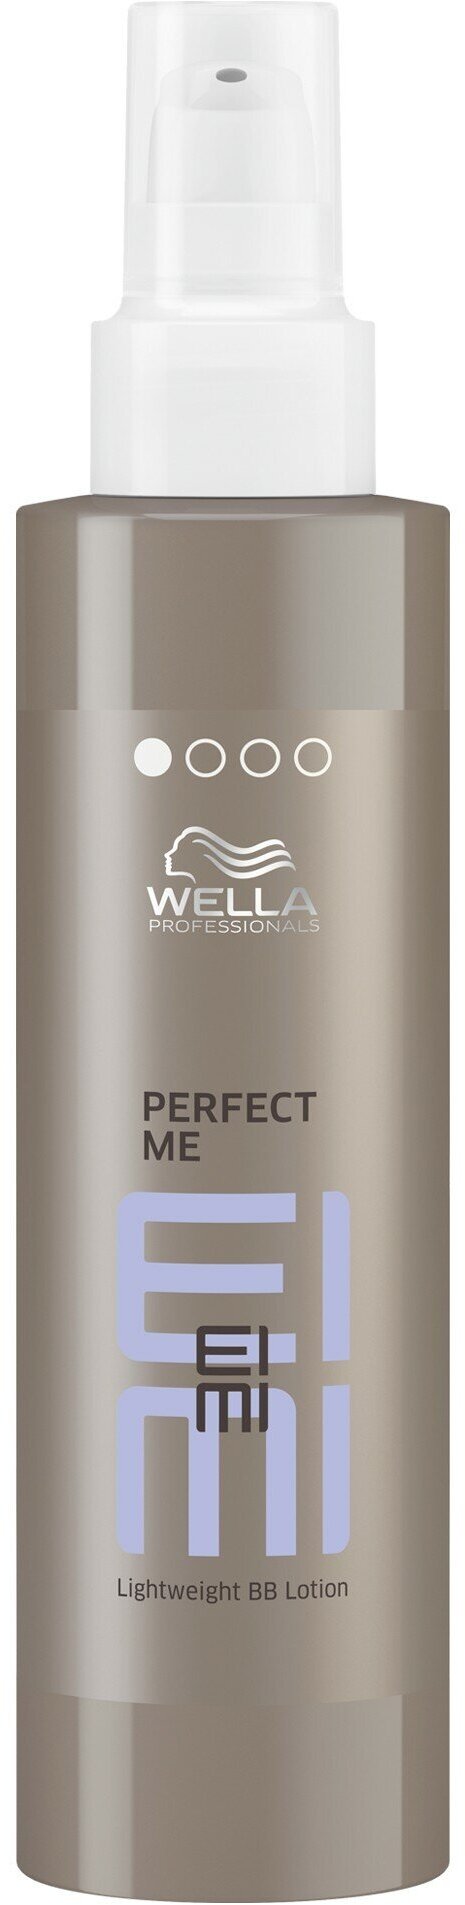 Wella Professionals Легкий ВВ-лосьон, 100 мл (Wella Professionals, ) - фото №7